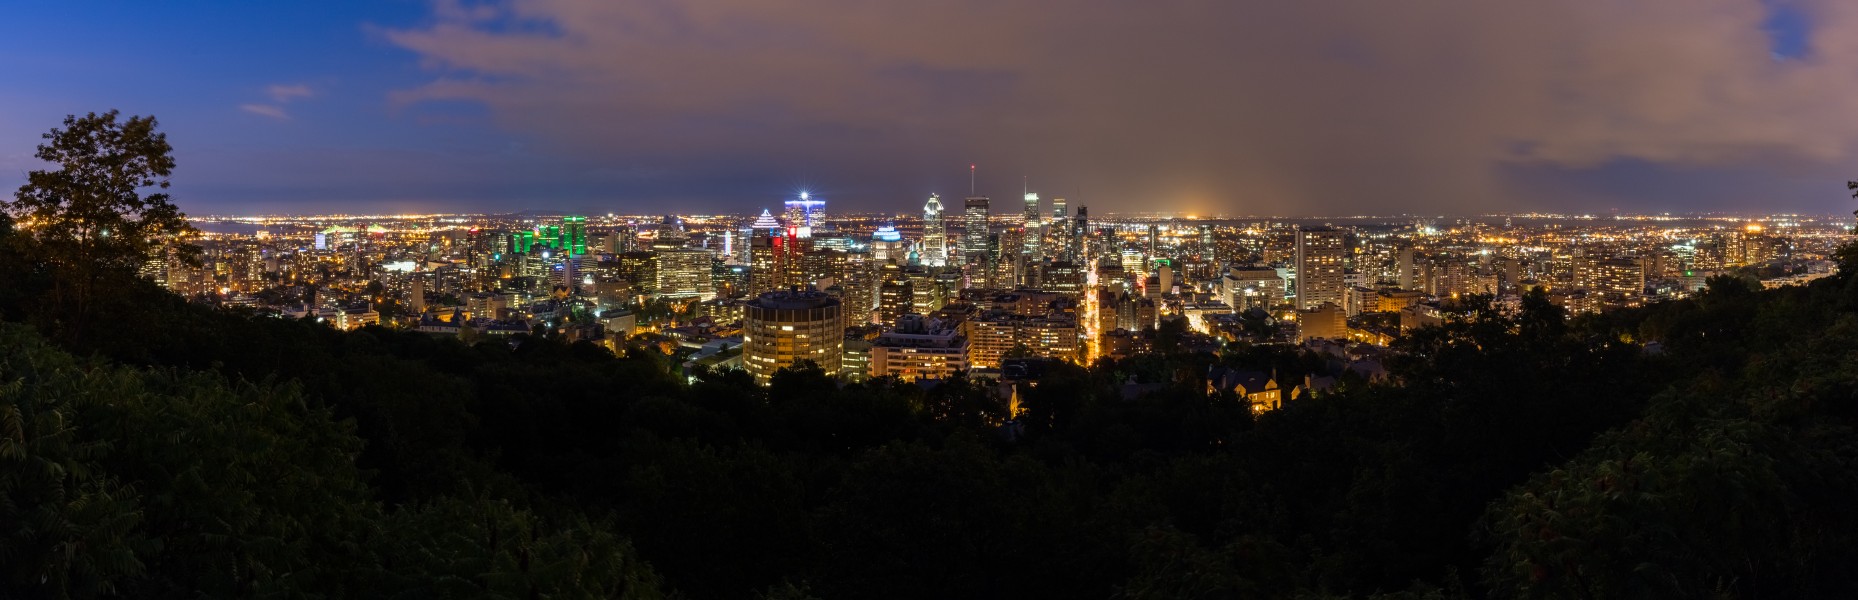 Vista de Montreal desde el Monte Royal, Canadá, 2017-08-12, DD 138-149 HDR PAN